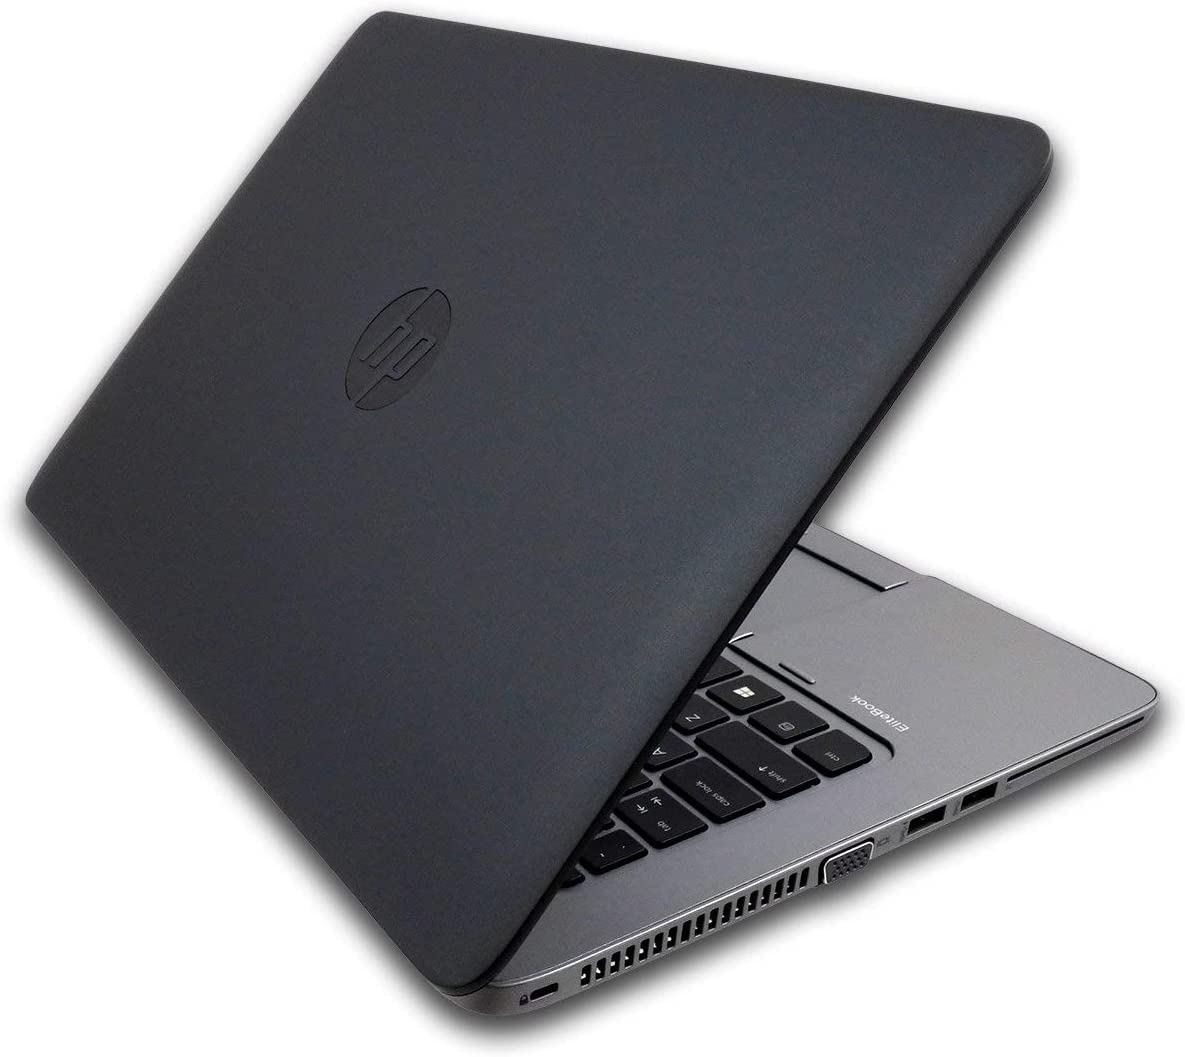 HP EliteBook 840 G2 14" i5-5200U 8GB / 16GB 256GB / 512GB SSD  Windows 10 Pro Laptop Computer (Renewed)